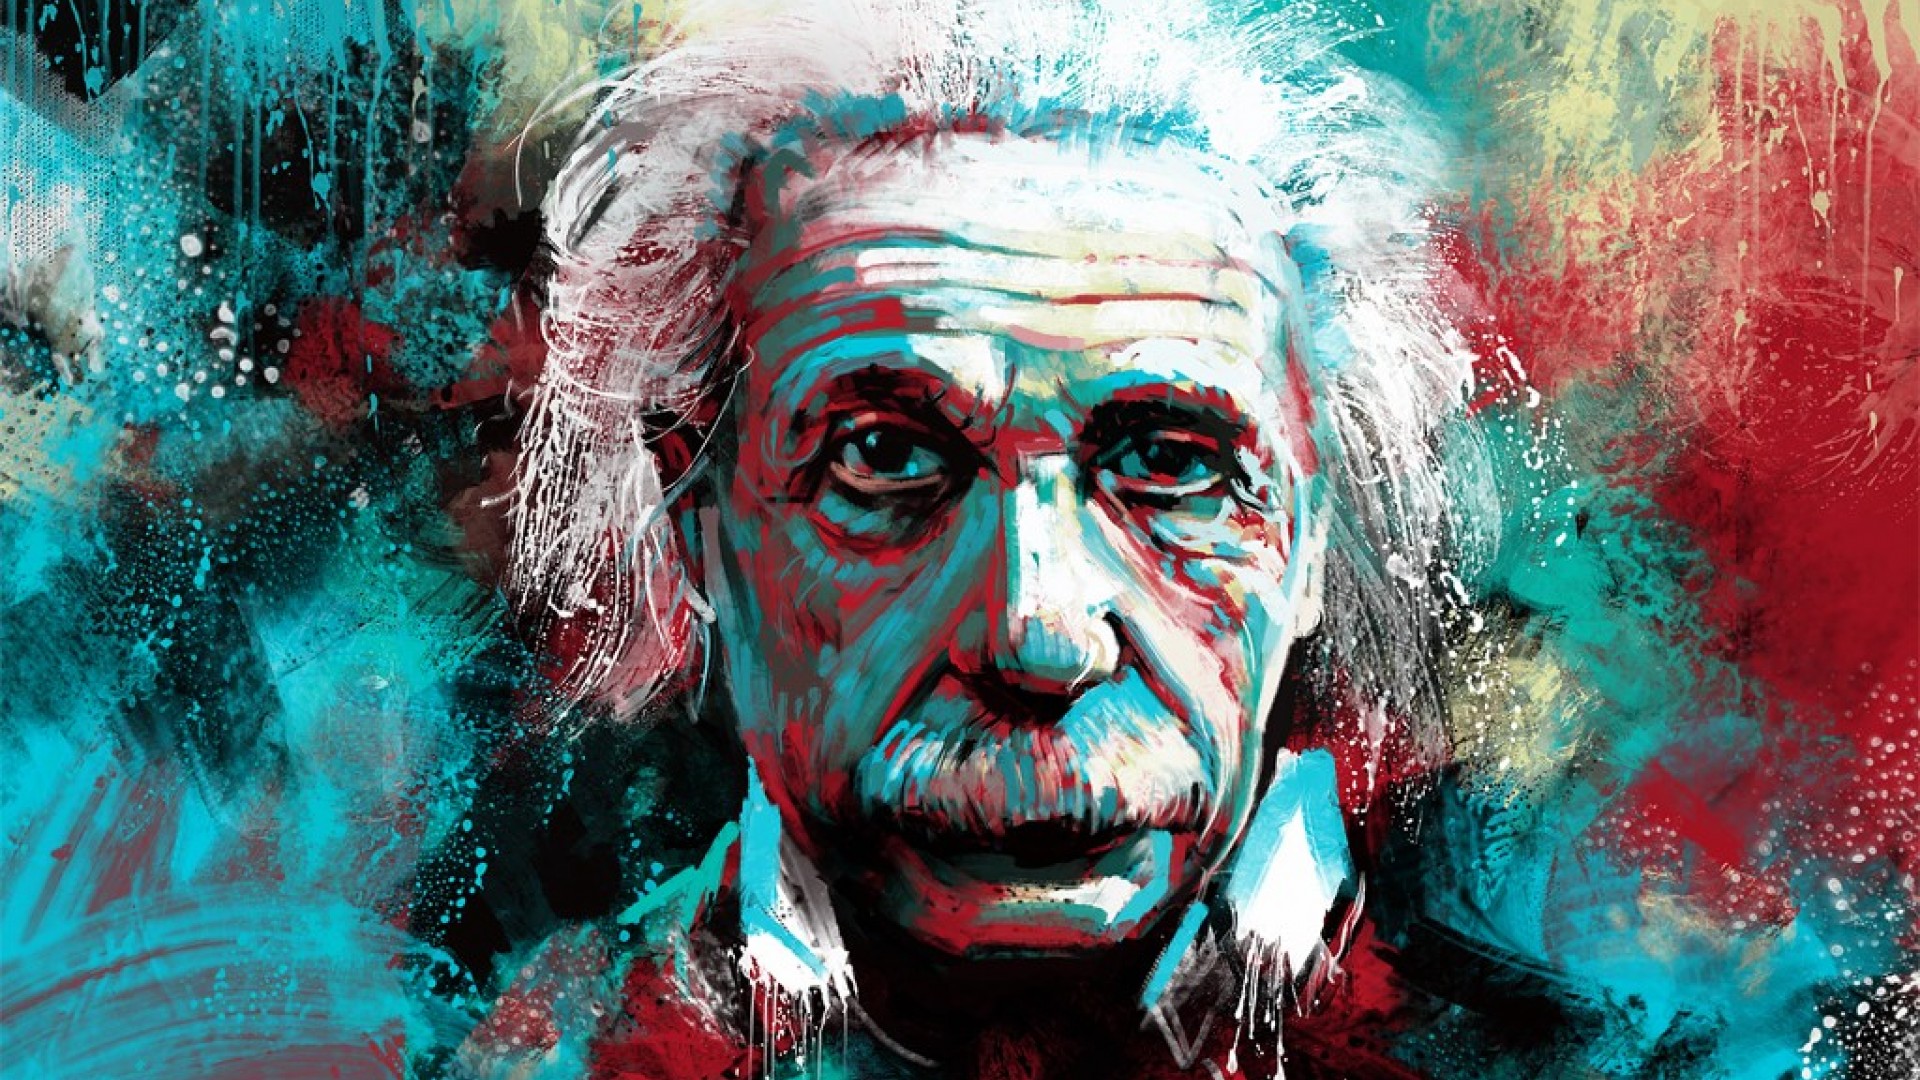 Albert Einstein Biography